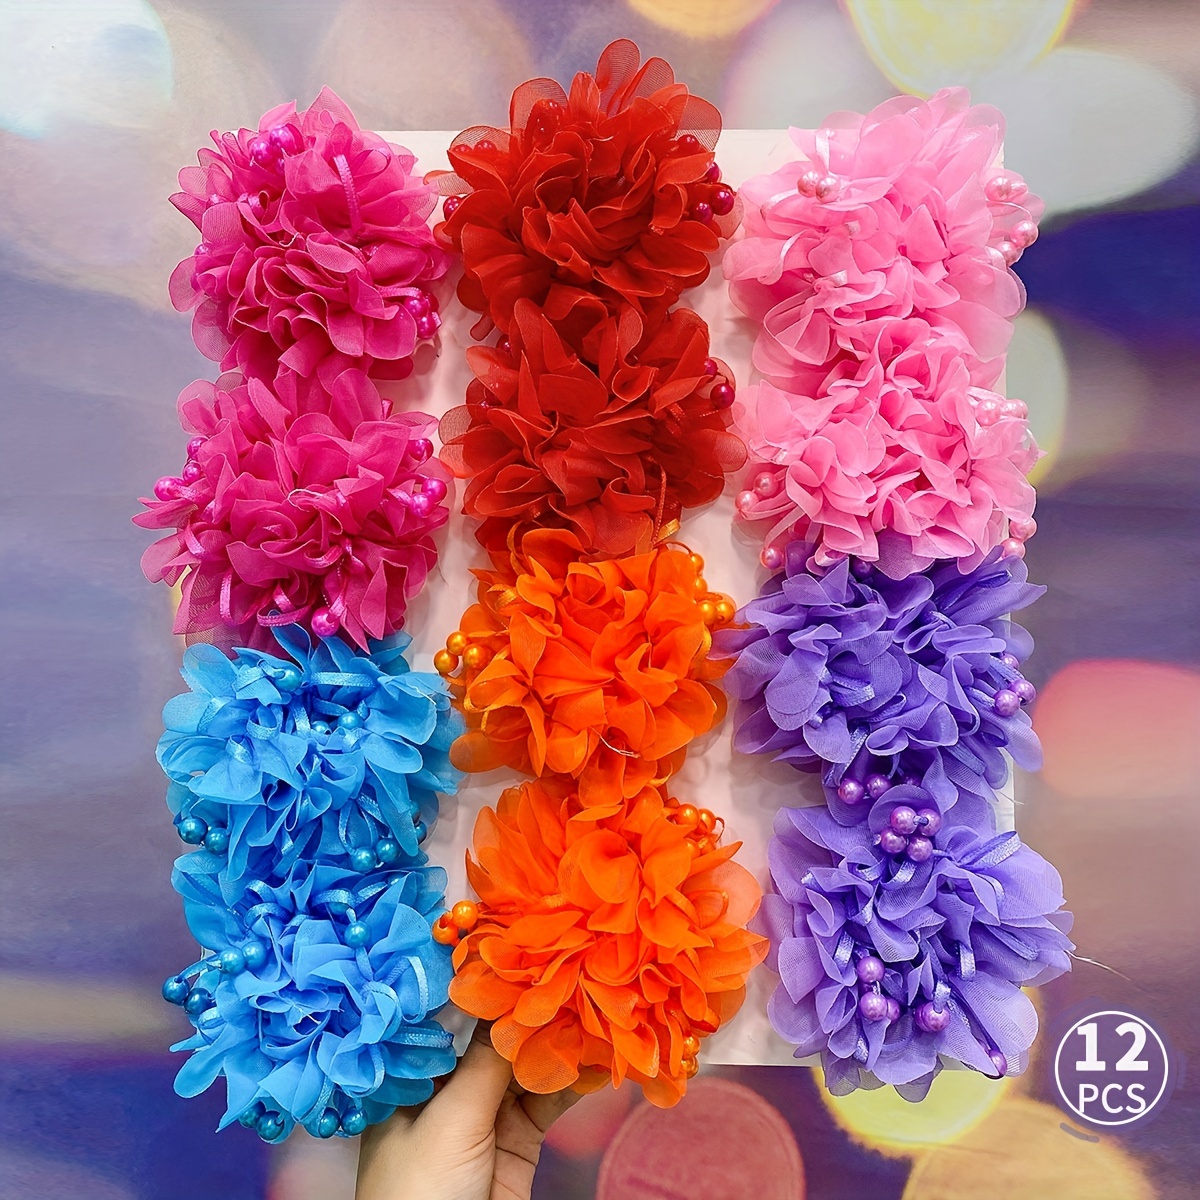 

12pcs Girls Cute High Elastic Flower Hair Ties Scrunchies Hair Accessories, Ideal Choice For Gifts